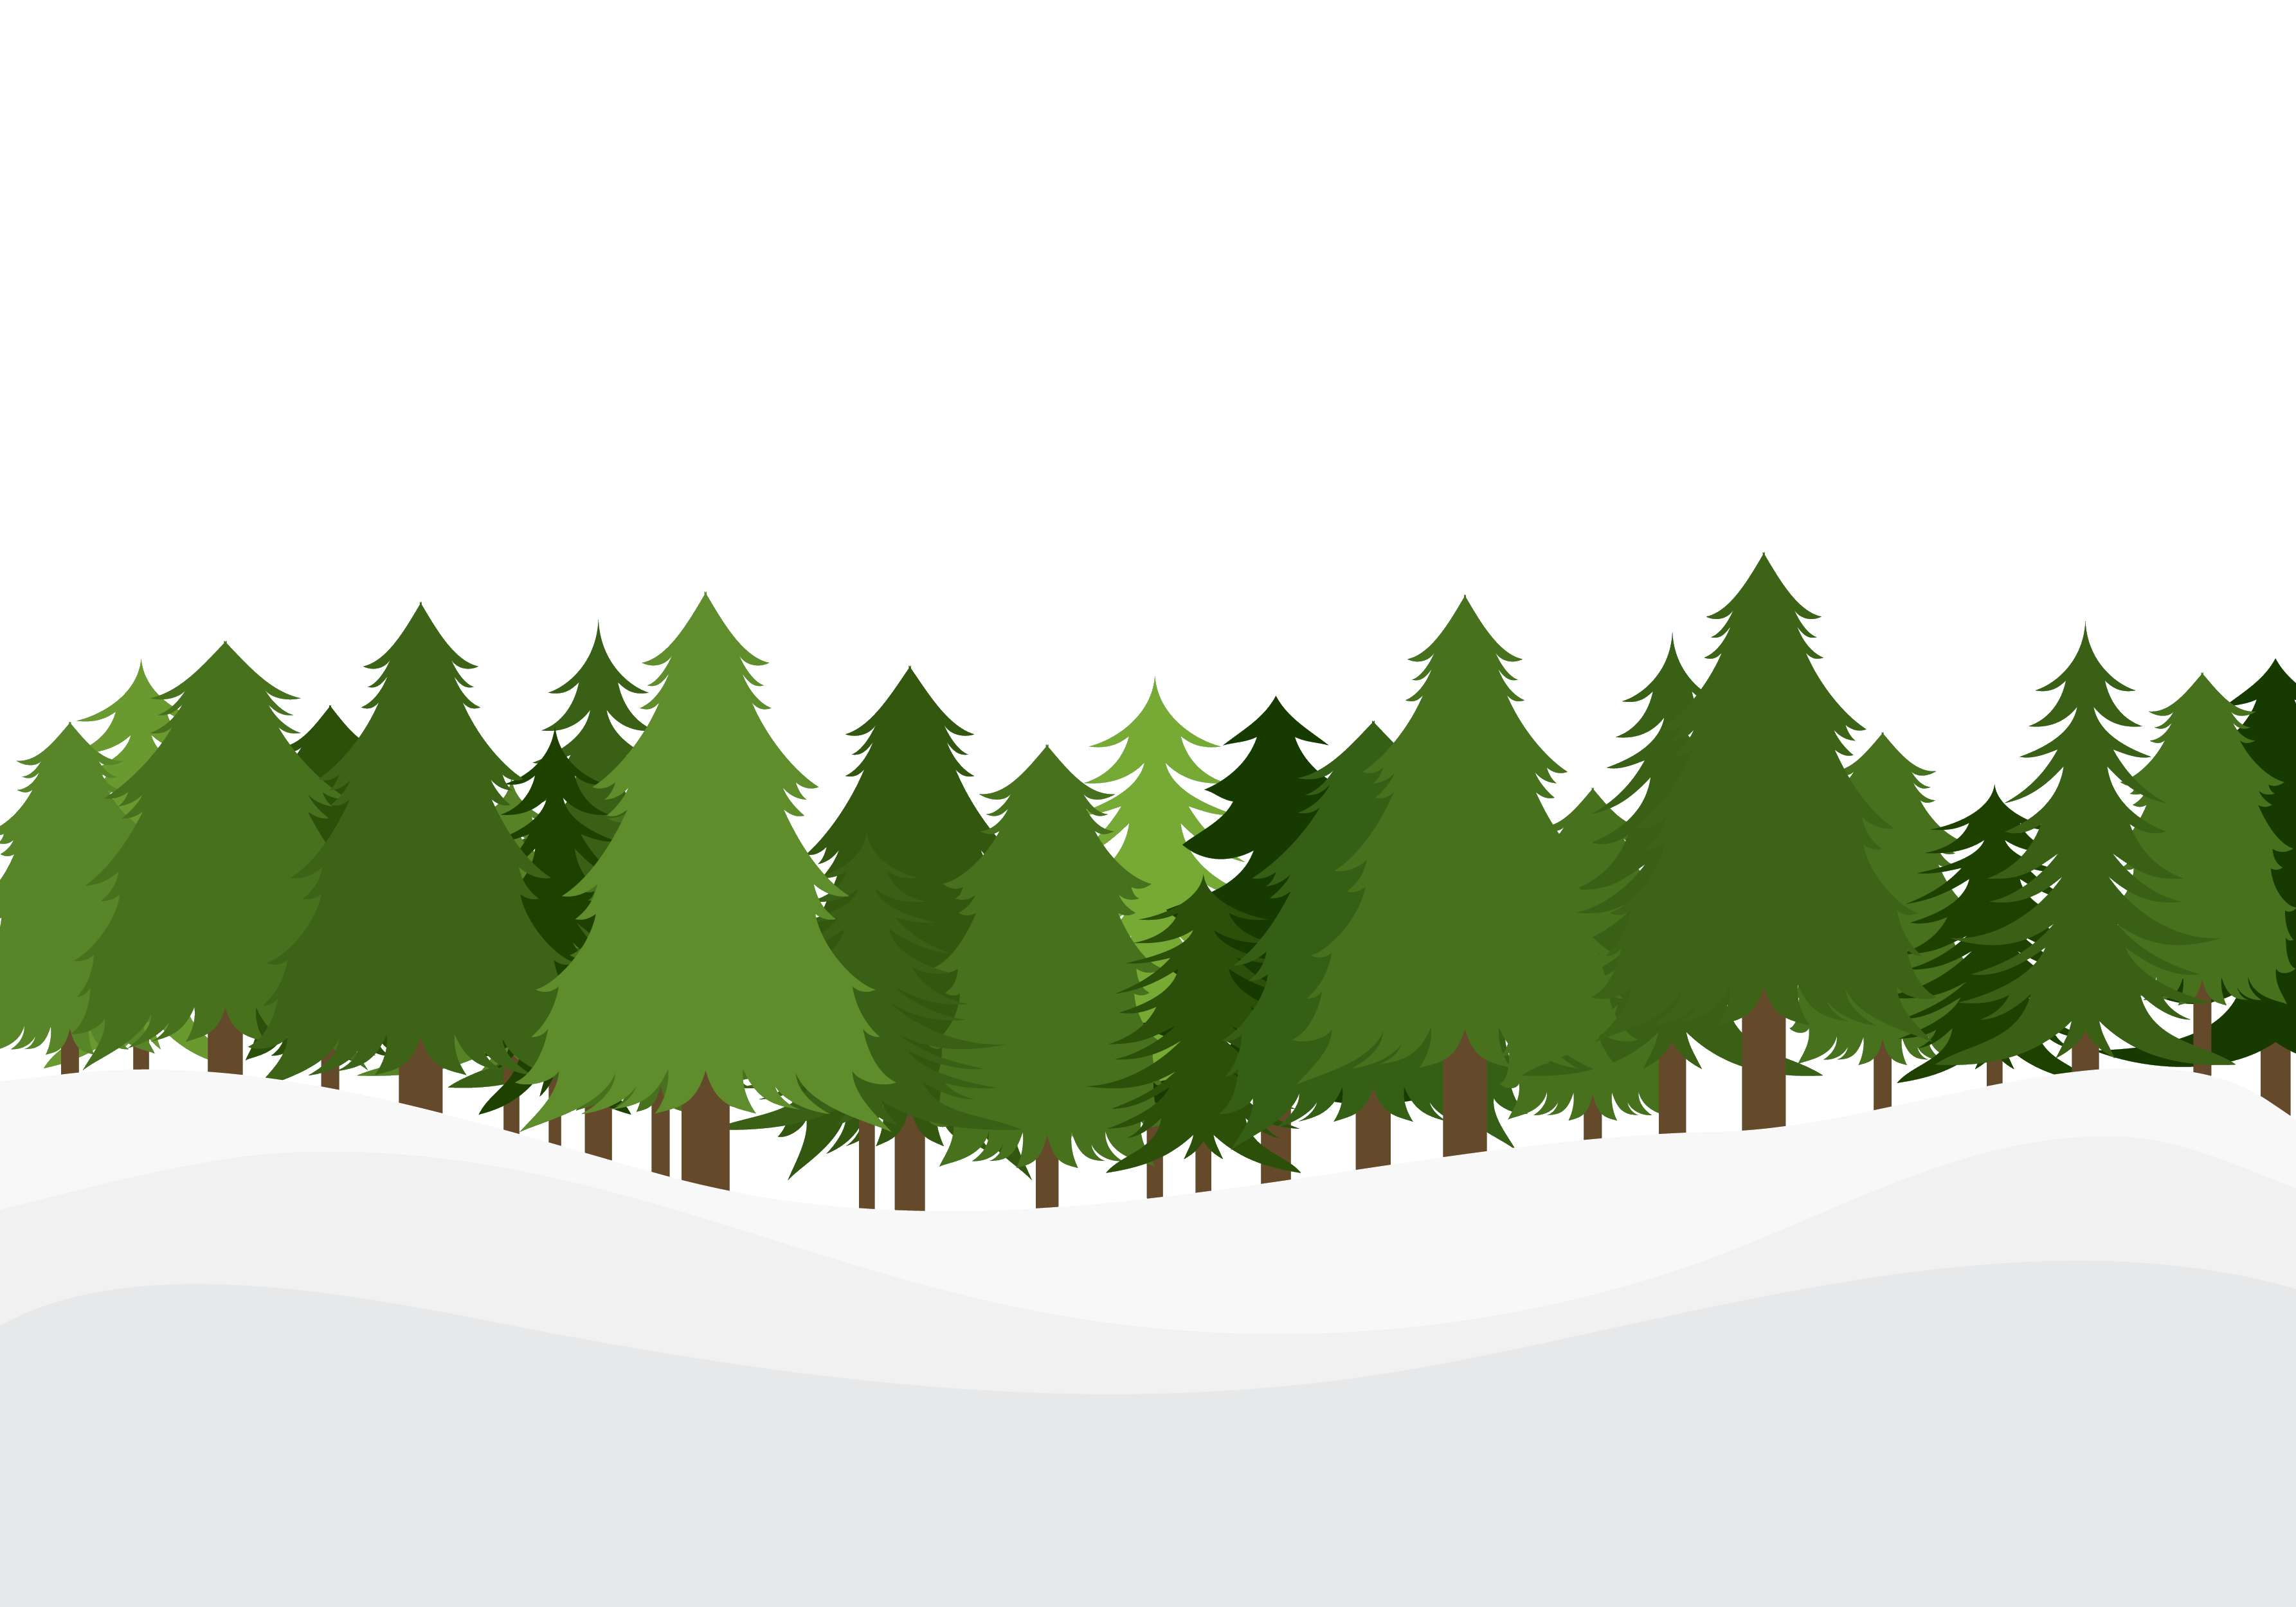 葉っぱや草木のイラスト 壁紙 背景no 085 雪原の針葉樹林 緑